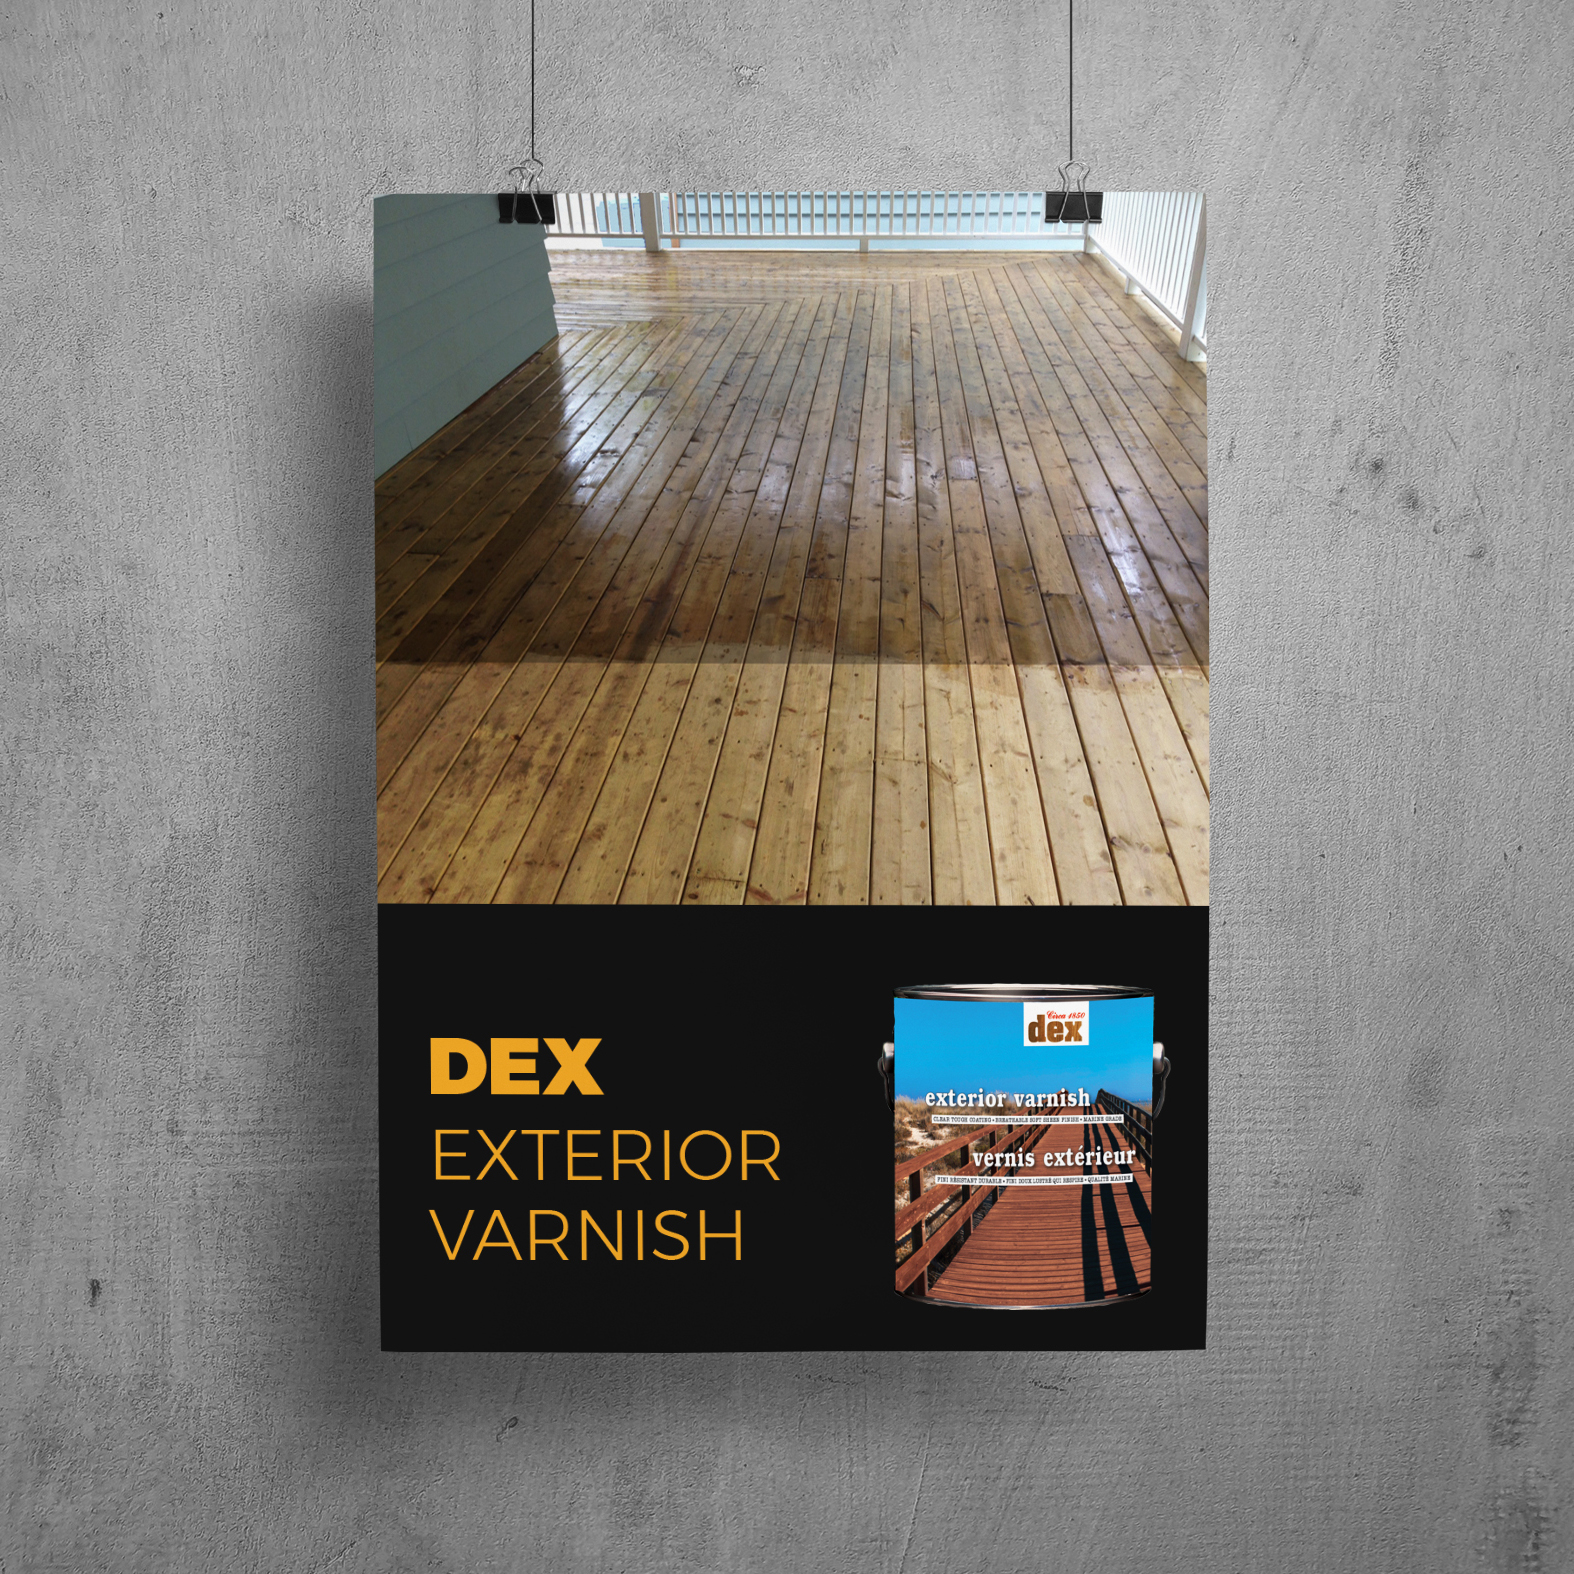 DEX Exterior Varnish Back Porch